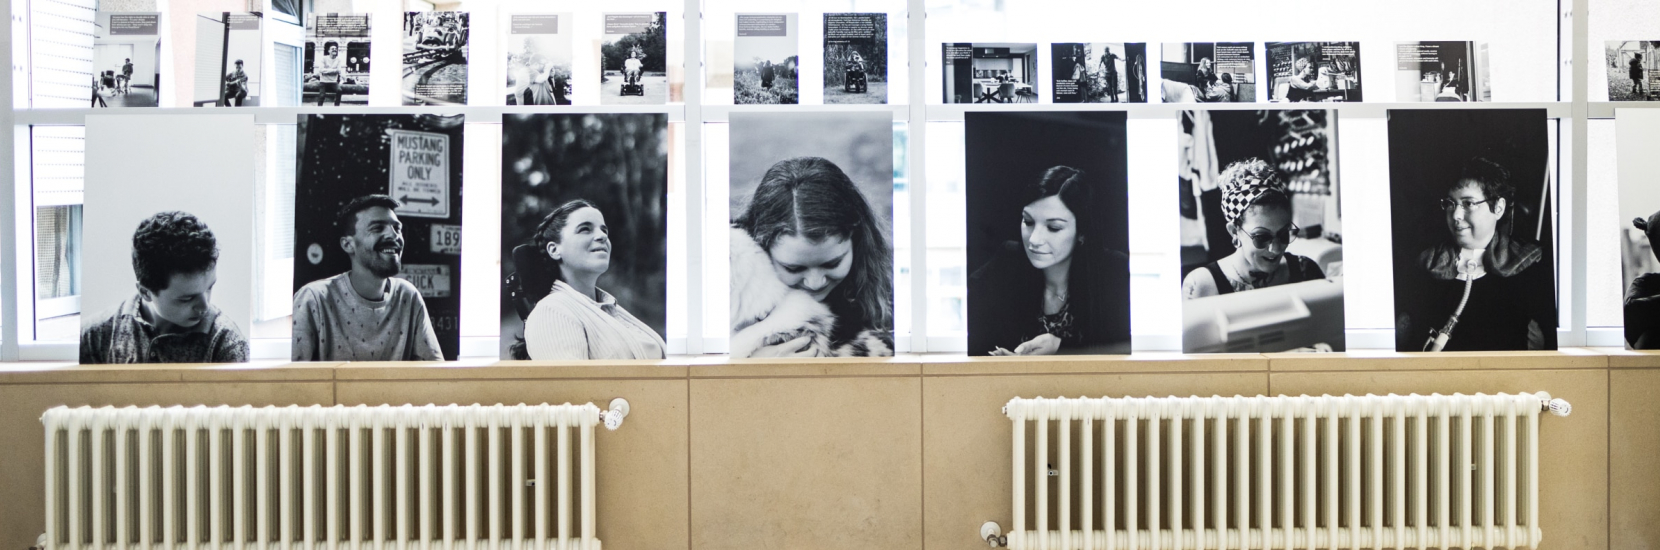 Le CHL a eu le plaisir d'accueillir dans ses murs l'exposition de photos "RaReflections" de l'ALAN